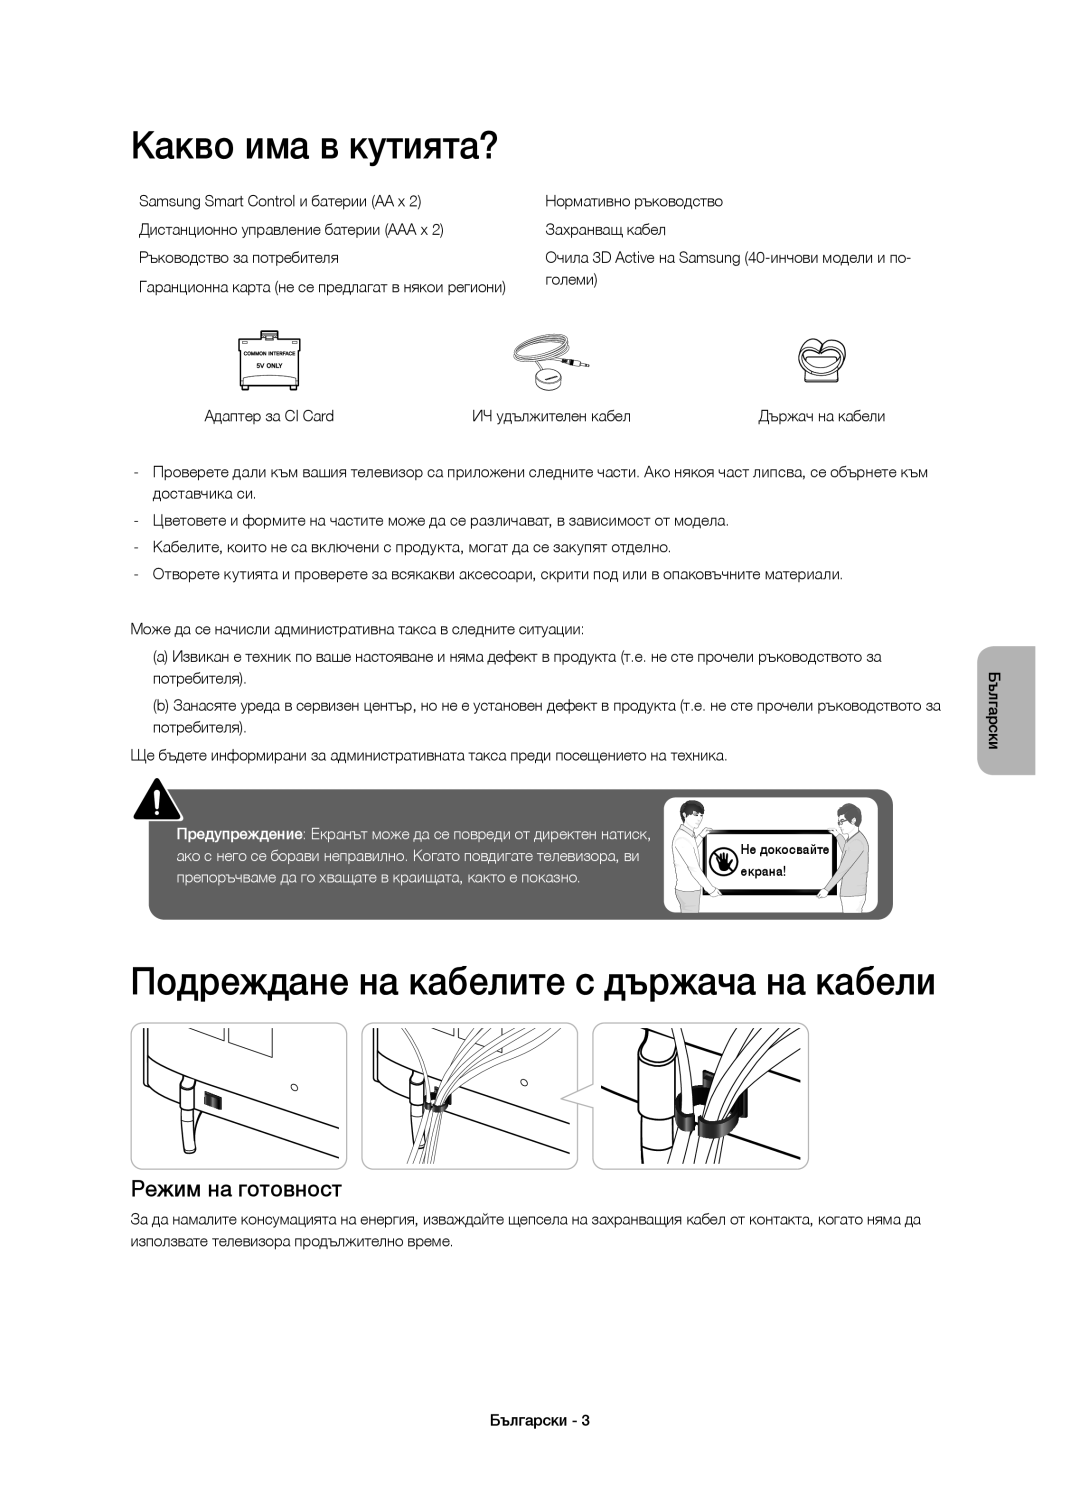 Samsung UE55H6410SSXXN manual Какво има в кутията?, Подреждане на кабелите с държача на кабели, Режим на готовност 